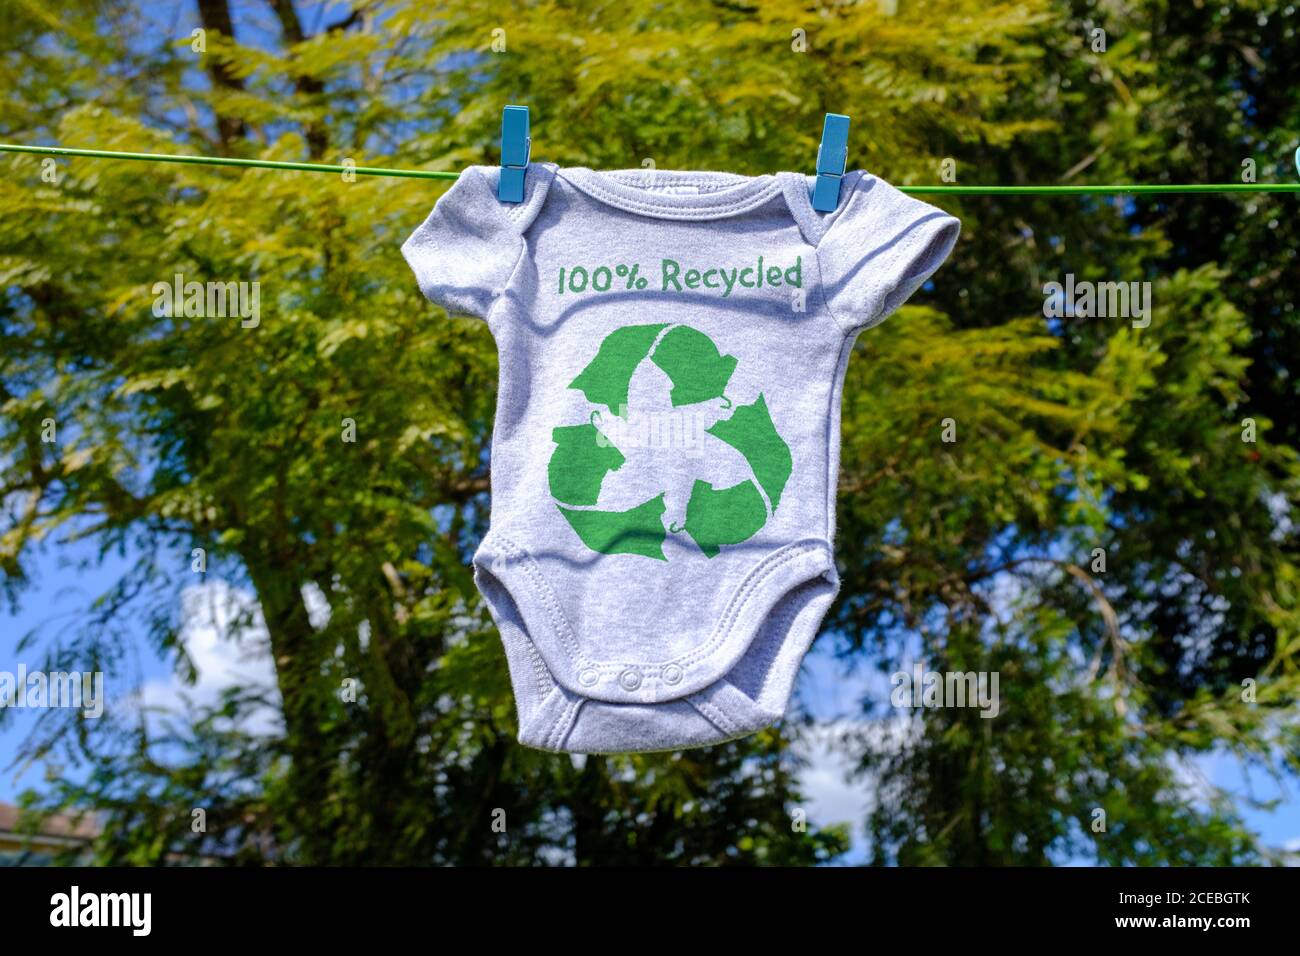 Recycling Kleidung Symbol auf Babygro Trocknen außen auf Wäscheleine mit 100% recyceltem Text, nachhaltige Mode Konzept Illustration Wiederverwendung, Recycling Kleidung Stockfoto